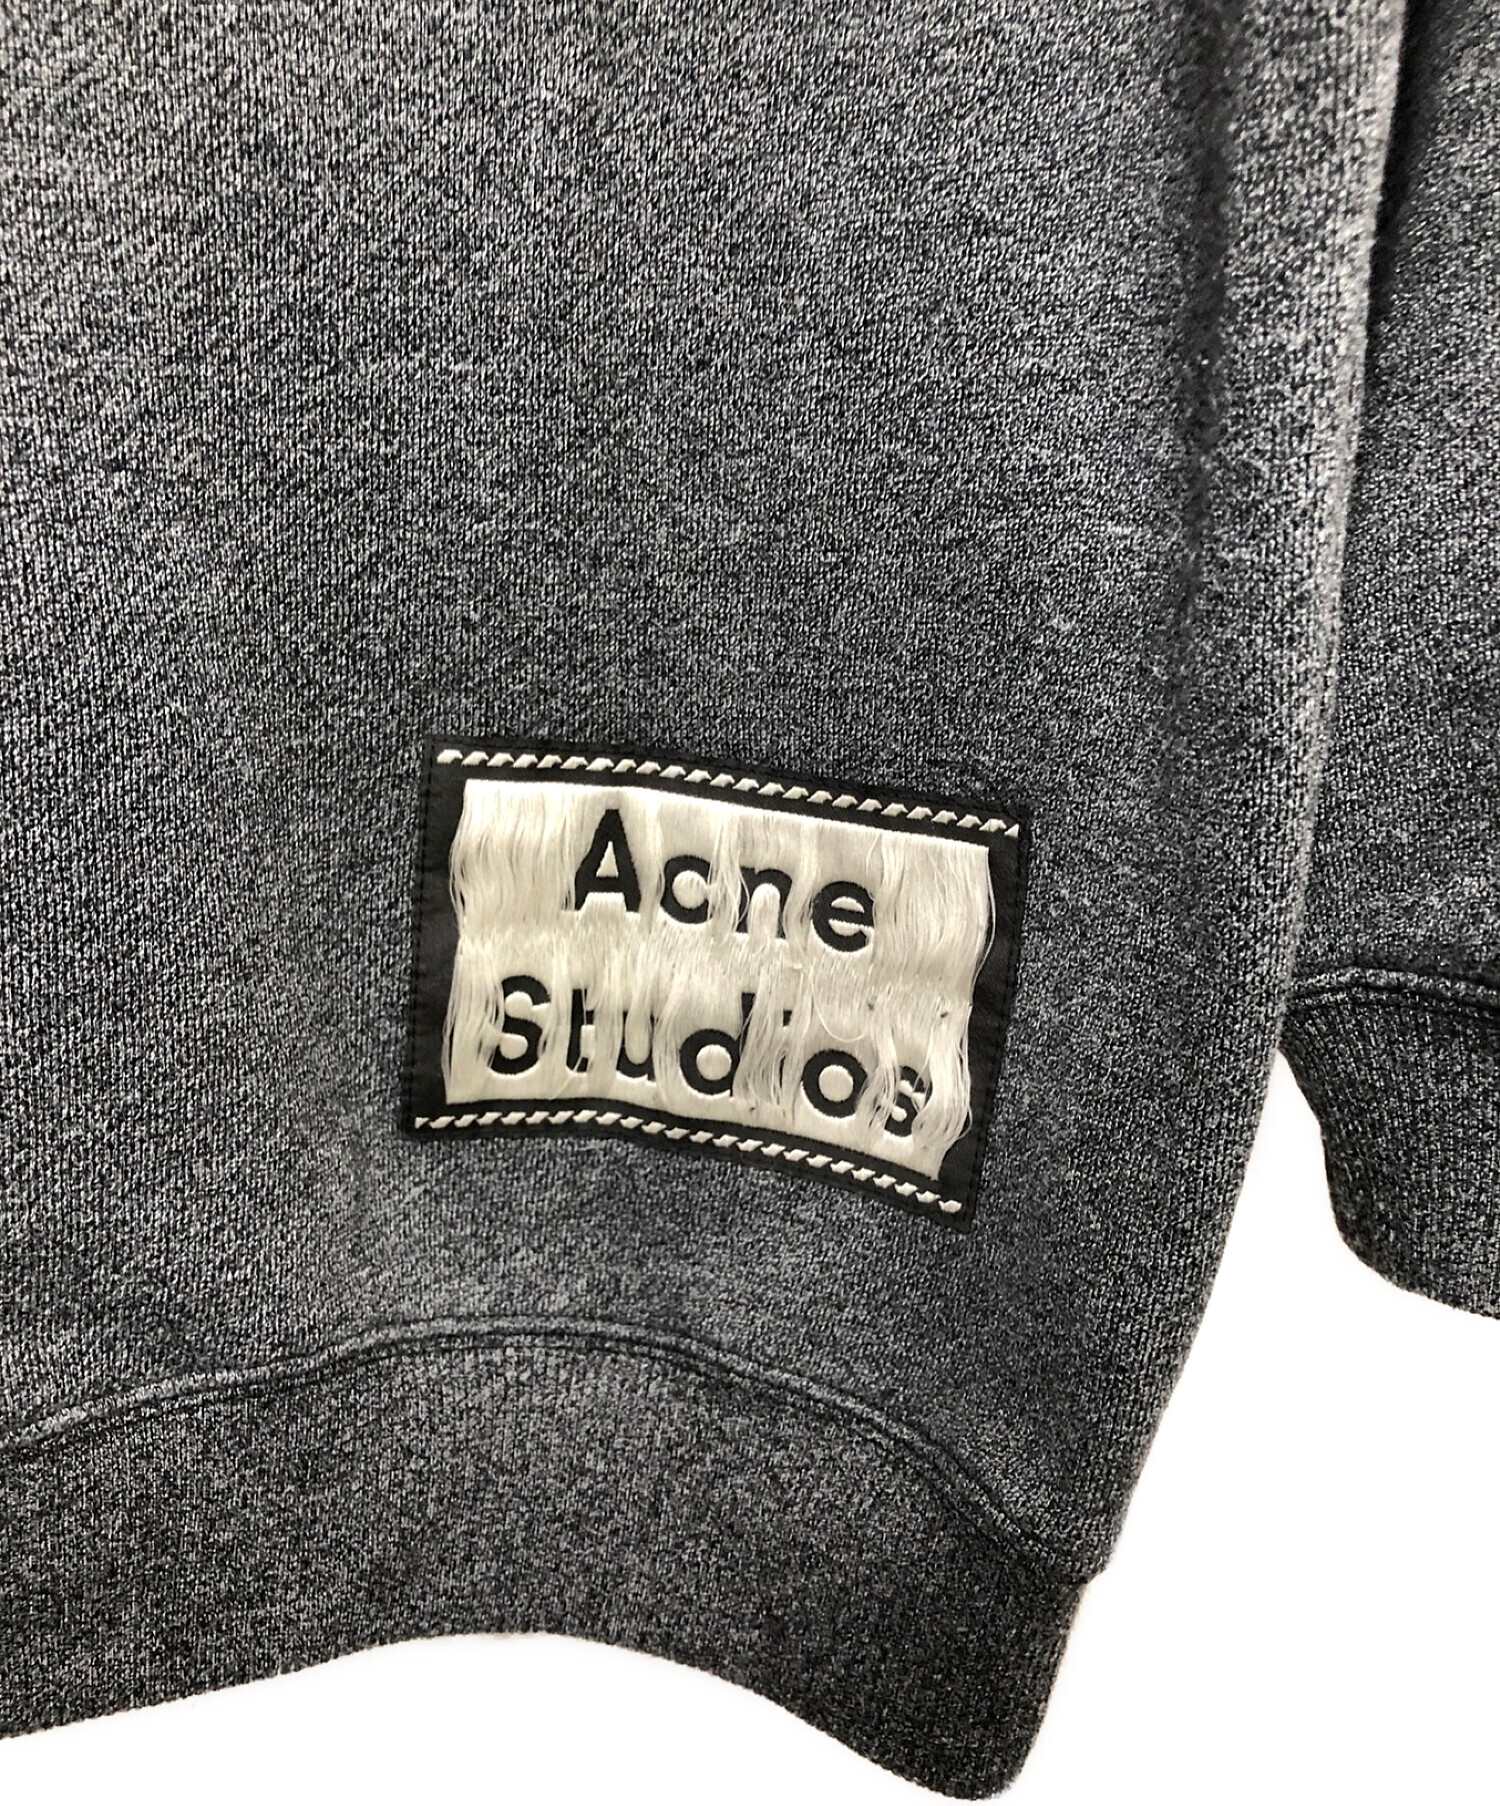 Acne Studios(アグネストゥディオス)XXSサイズパーカー